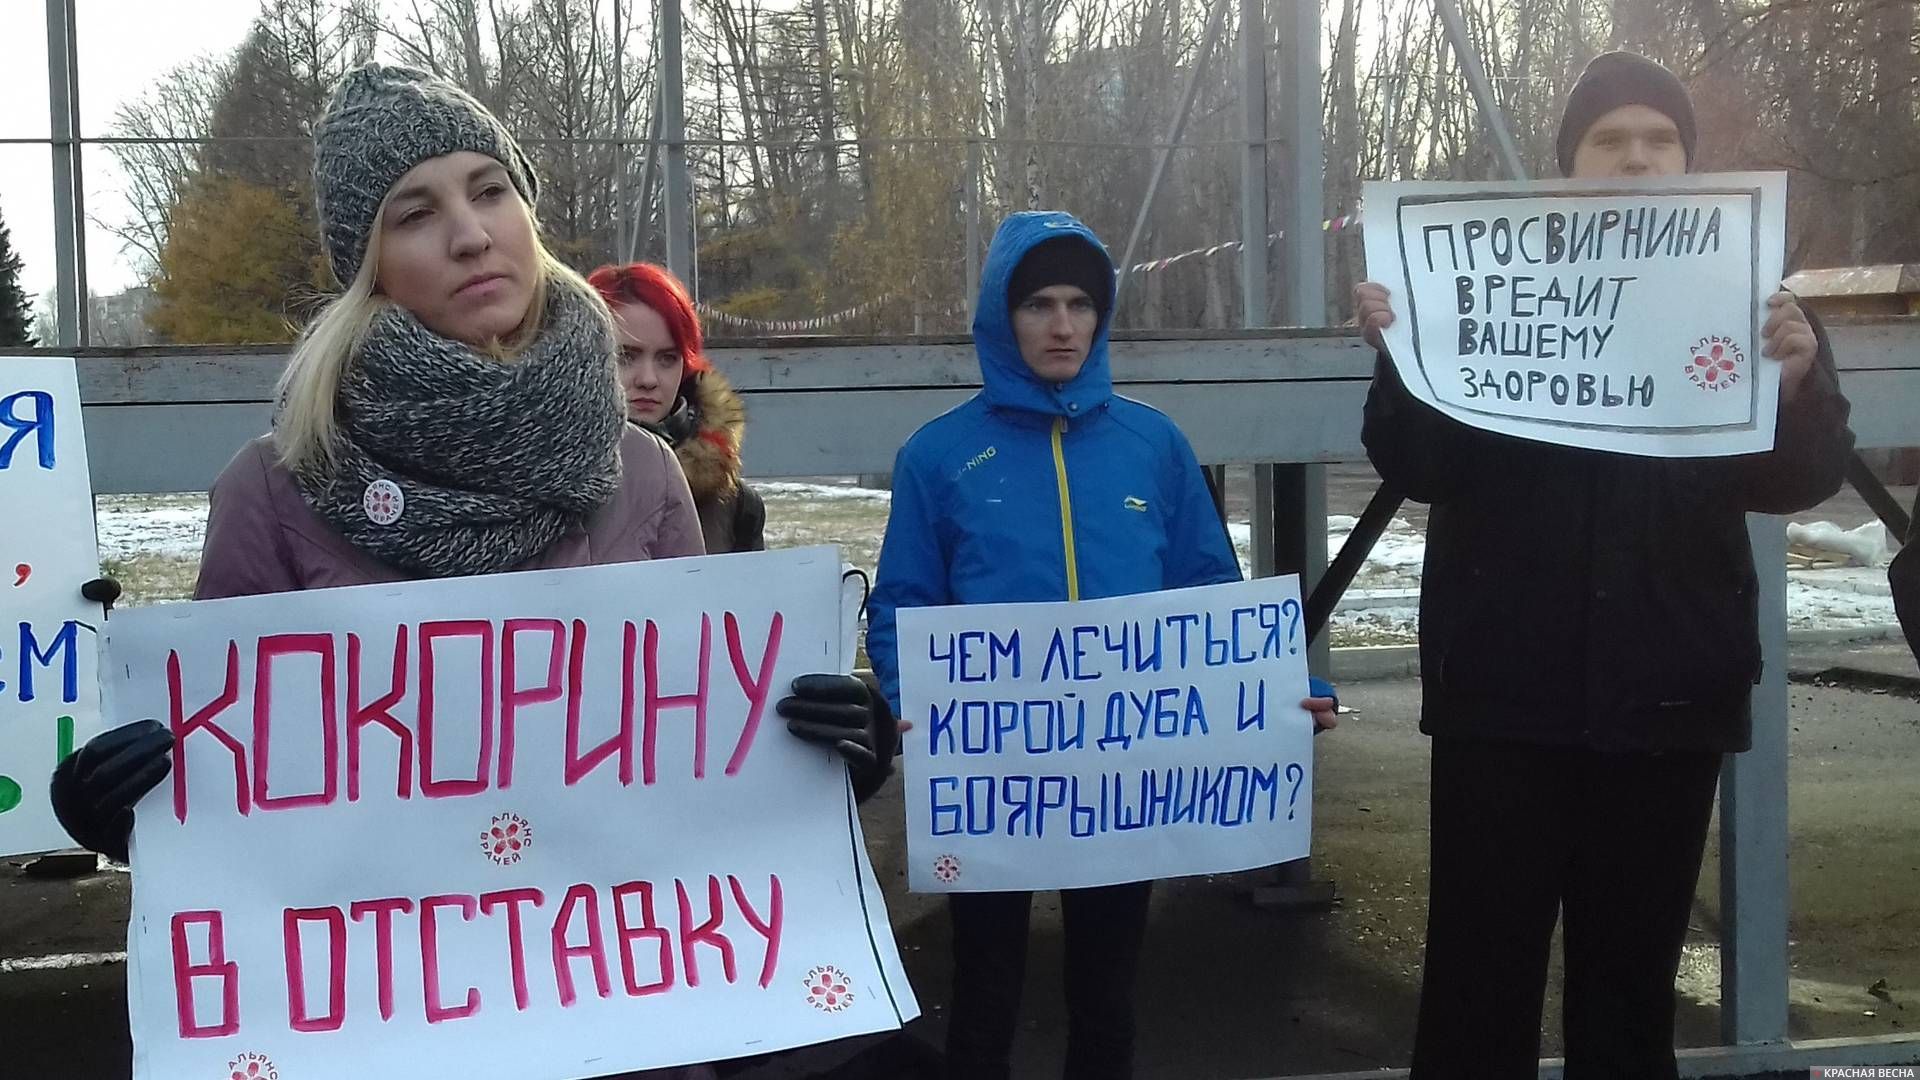 Слева — Анастасия Тарабрина (Альянс врачей). На плакате — требование об отставке Ларисы Кокориной — главы областного департамента здравоохранения